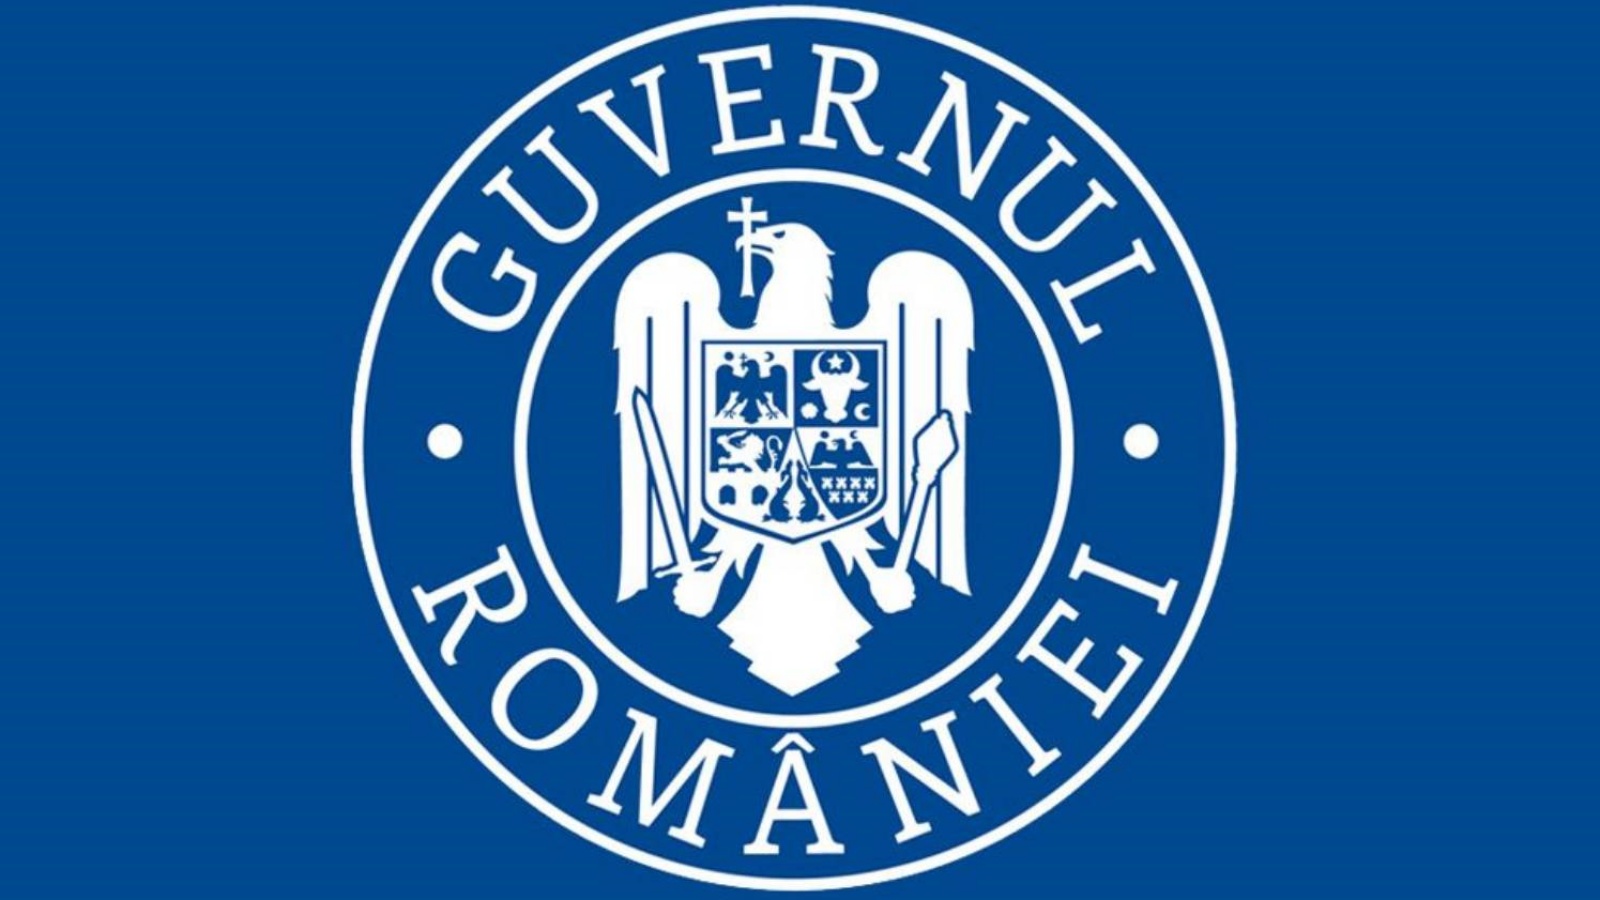 Nytt paket med socialekonomiska åtgärder tillkännagav av Rumäniens regering